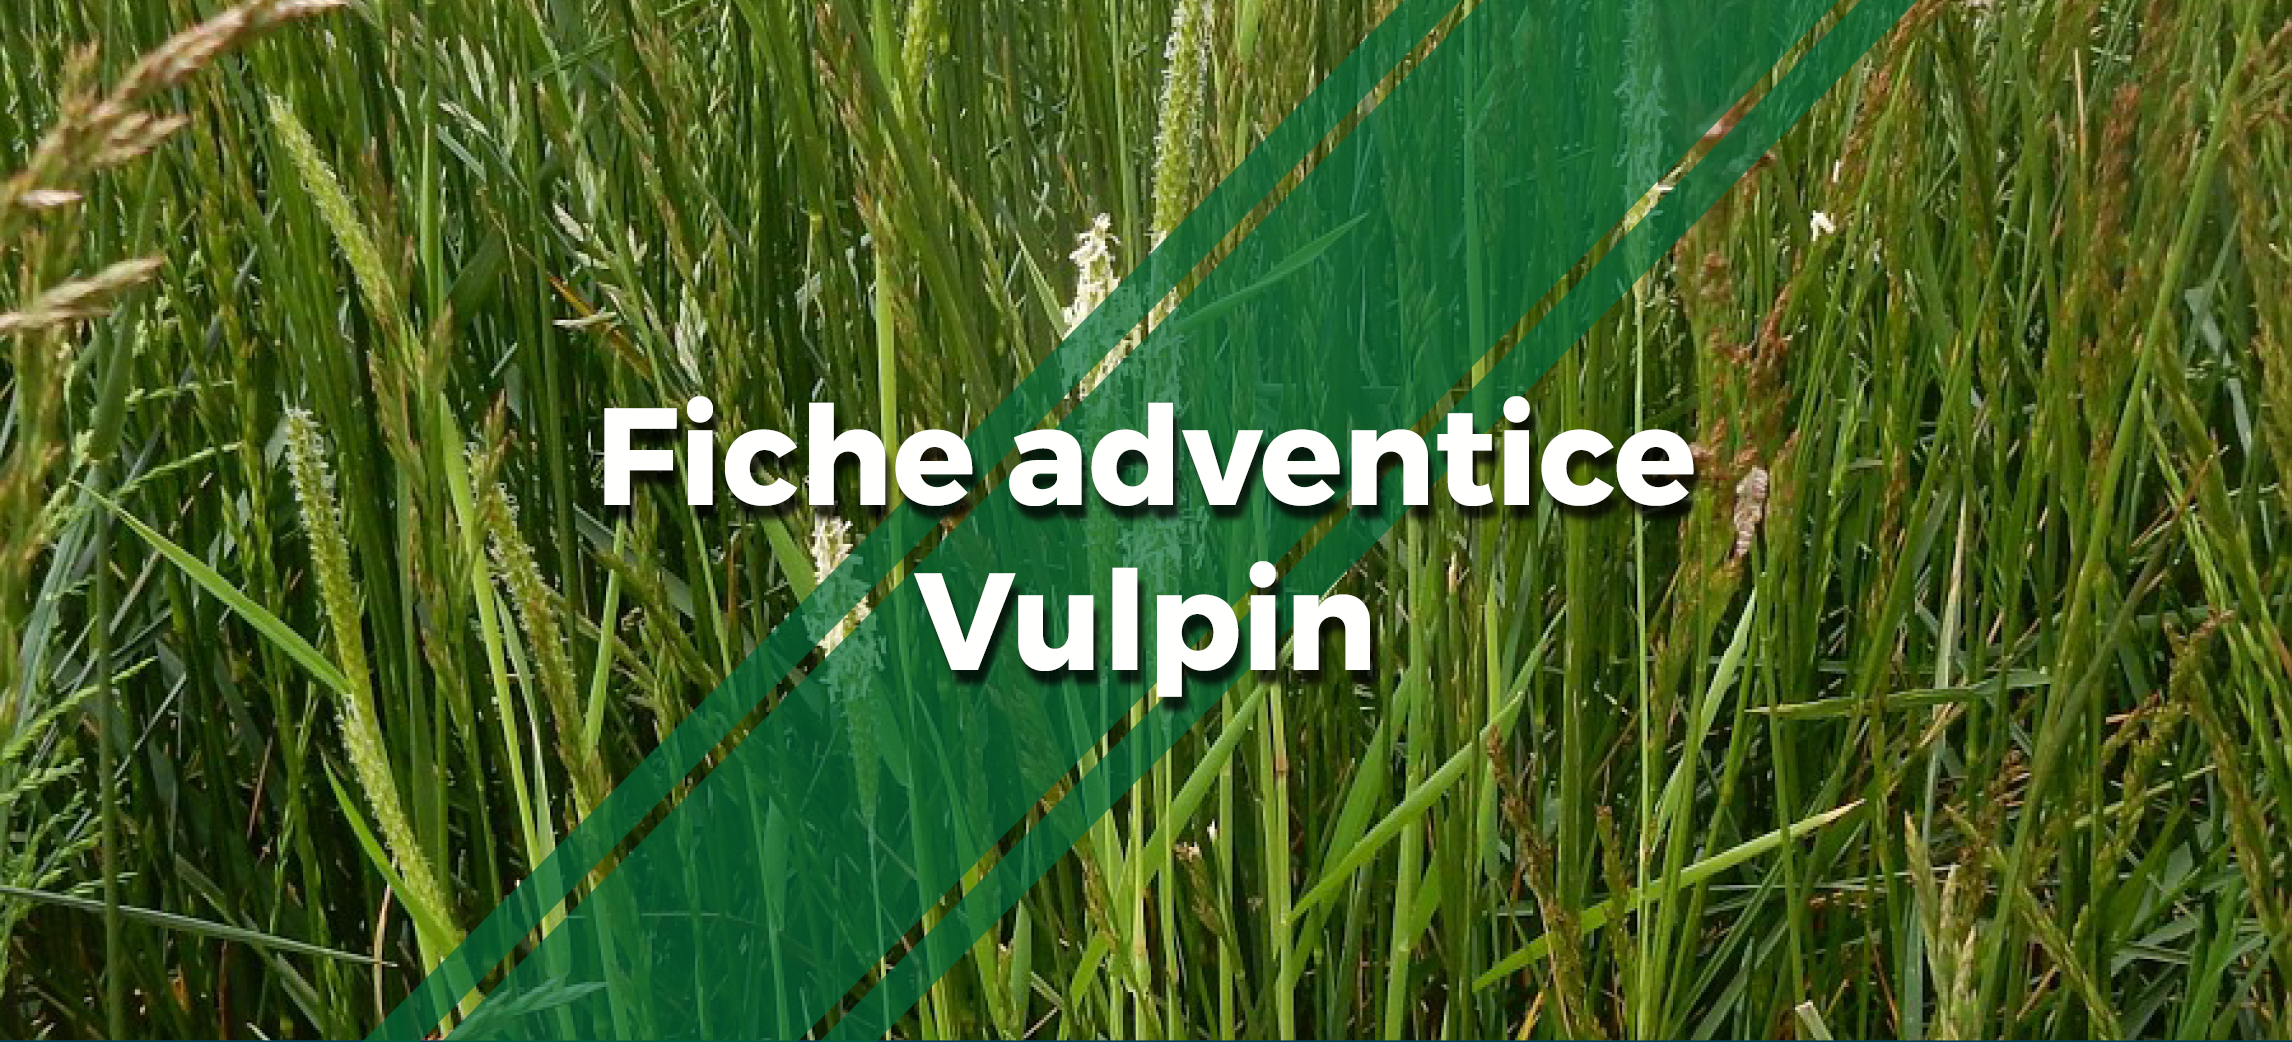 une photo de Vulpins avec le texte "Fiche adventice Vulpin"